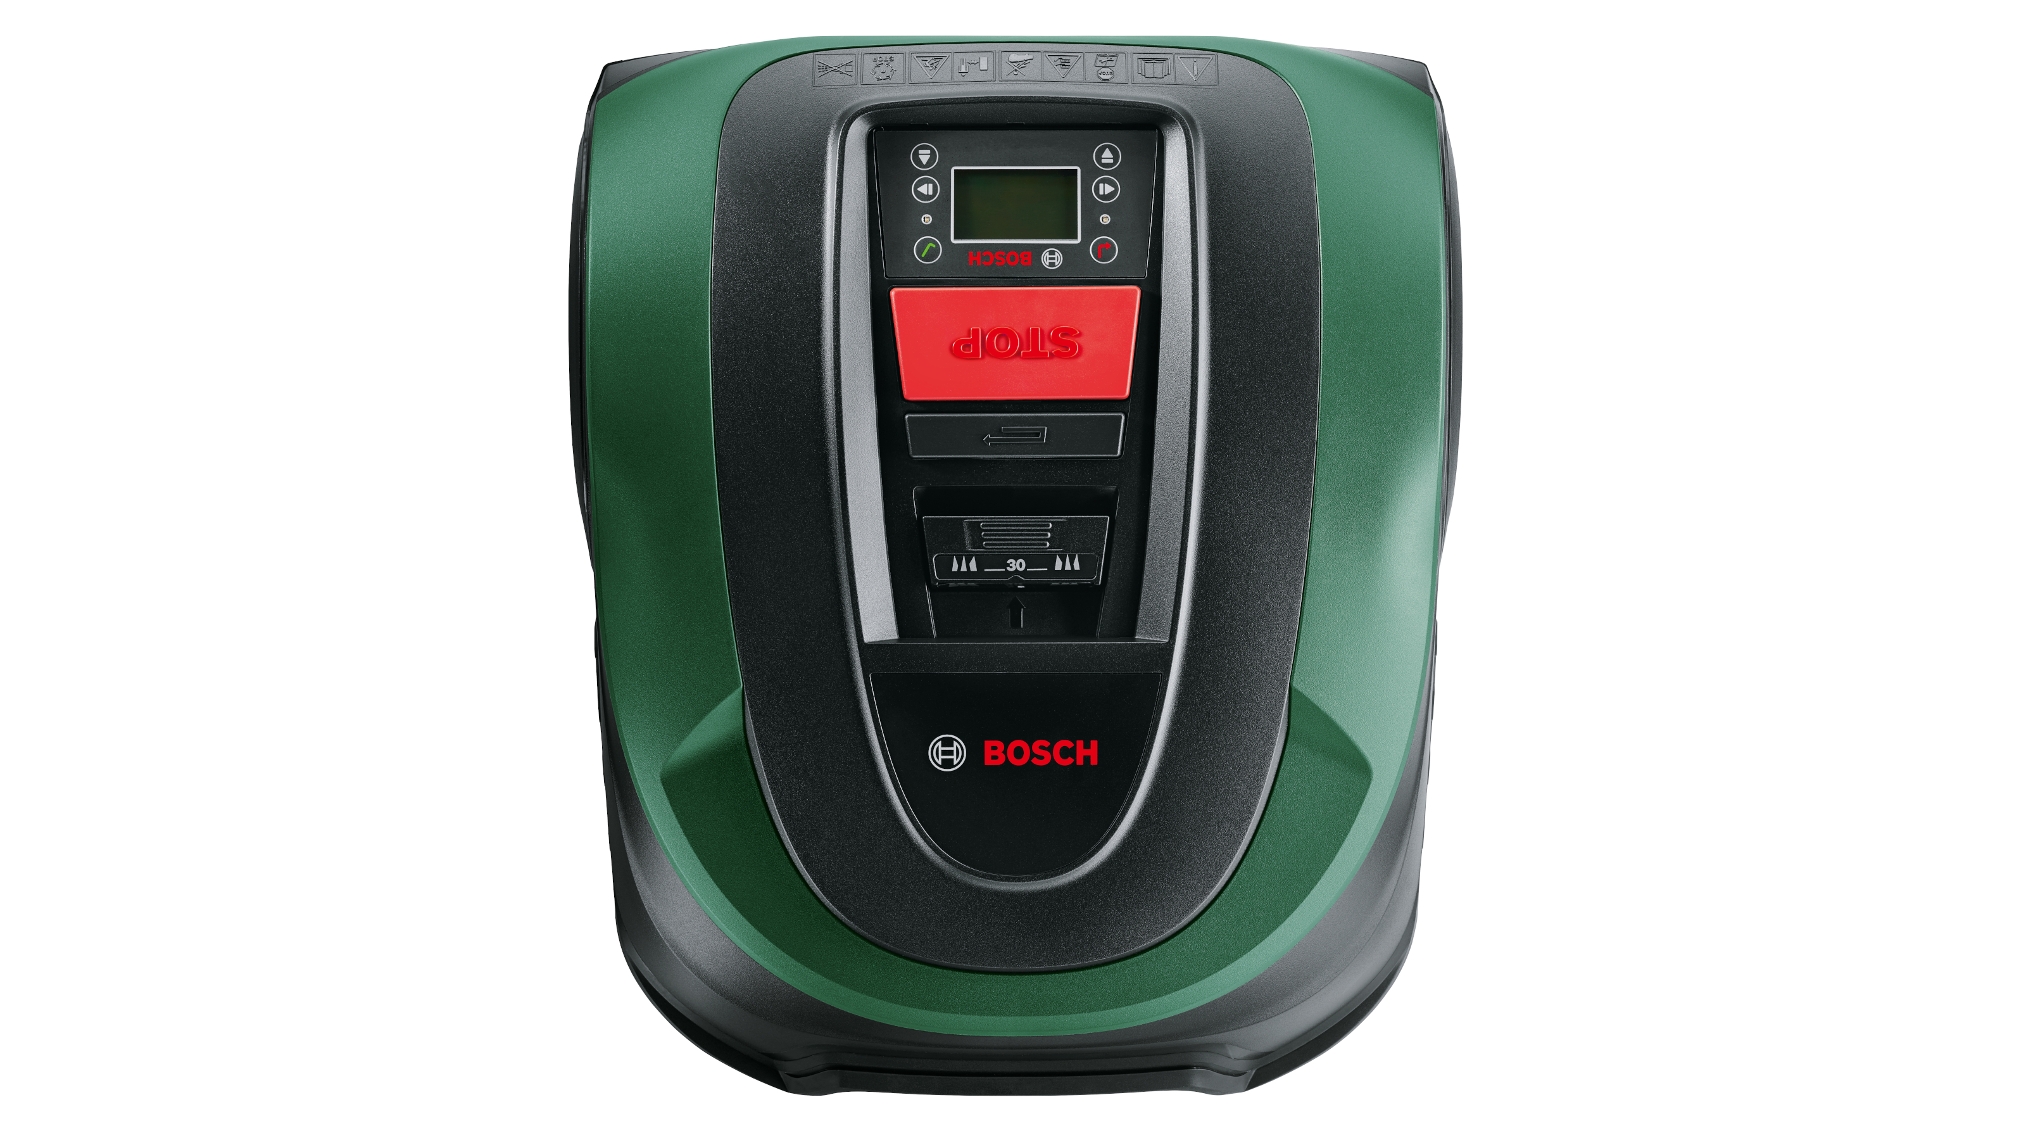 Bosch Tondeuse robot sans fil Indego avec poste de charge 06008A2100 ancien modèle 